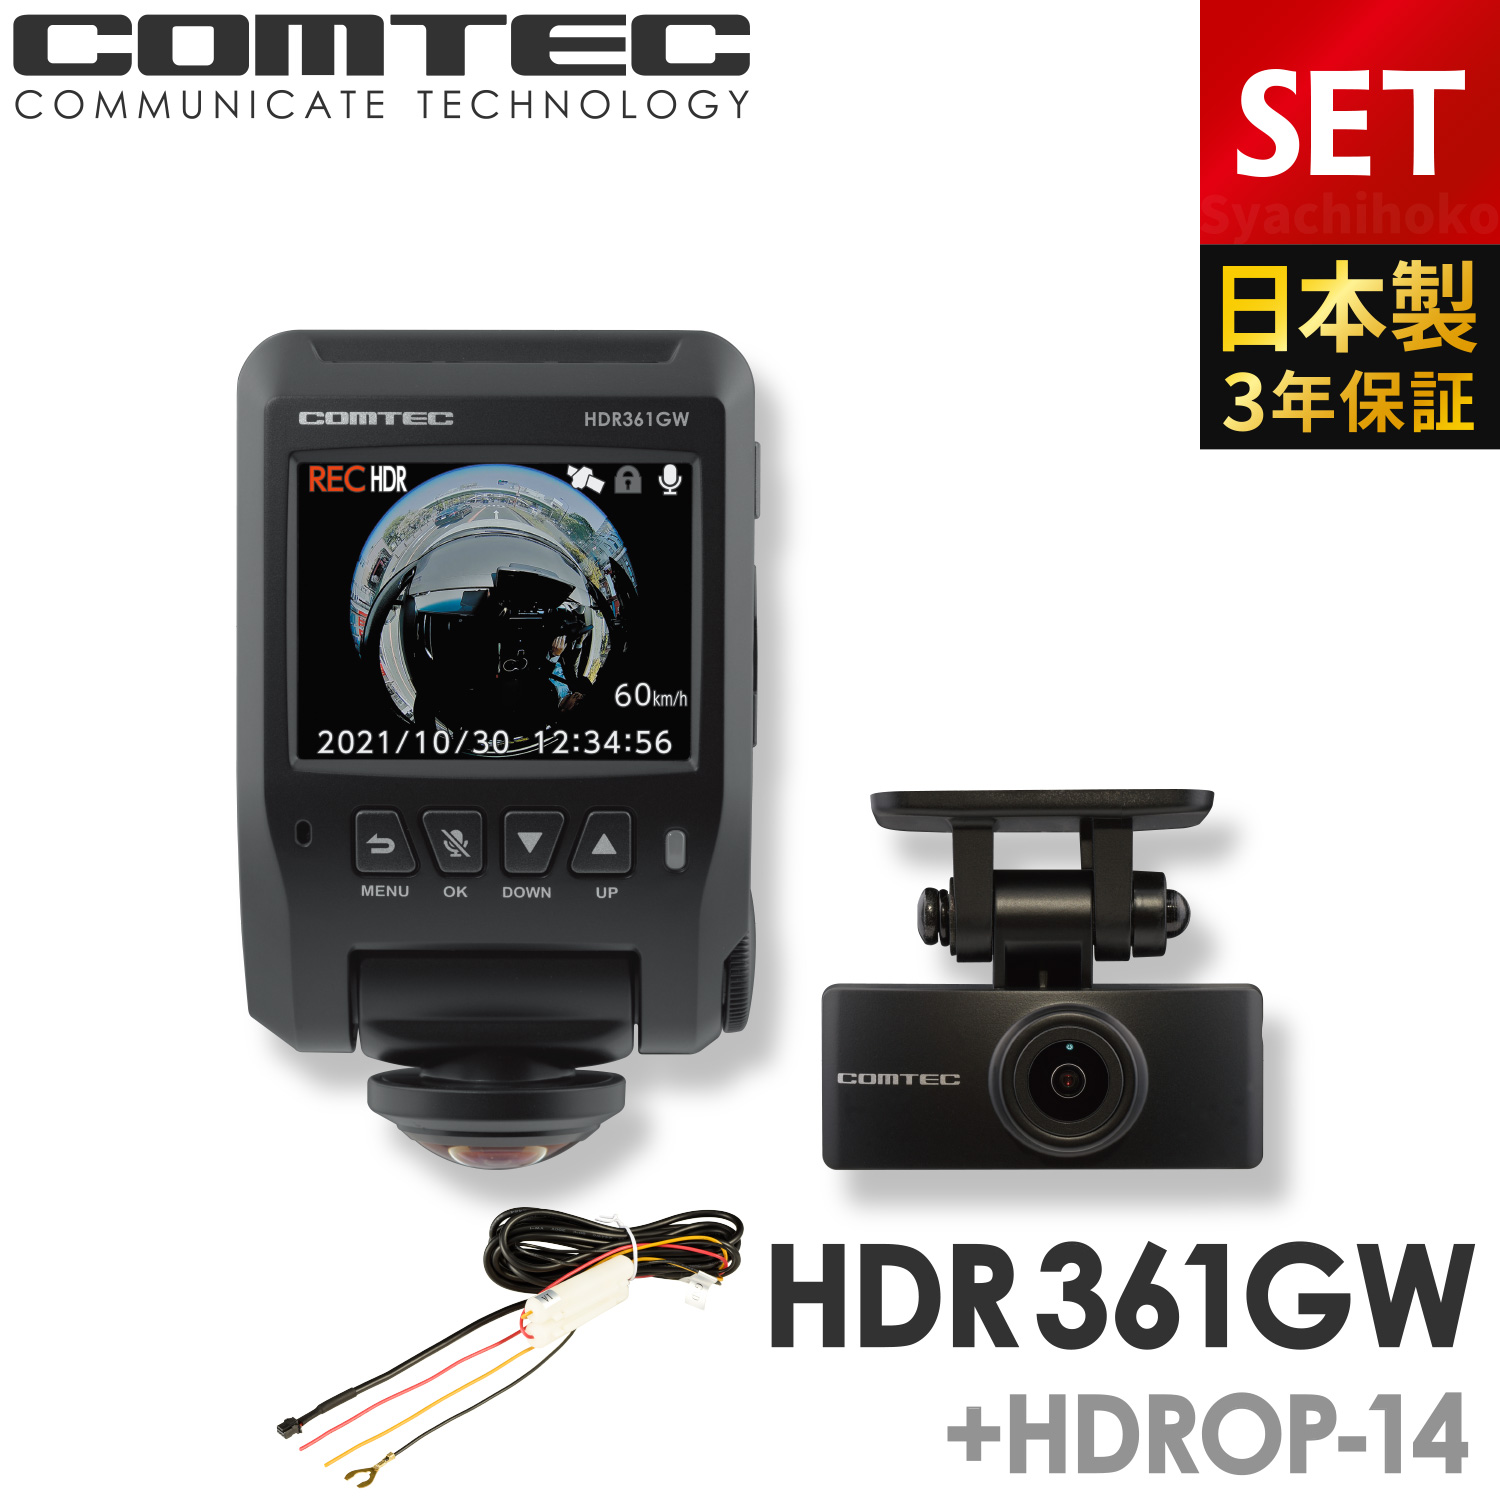 ドライブレコーダー 日本製 3年保証 360度+リヤカメラ コムテック HDR361GW+HDROP-14 駐車監視コードセット 前後左右 全方位記録 前後2カメラ